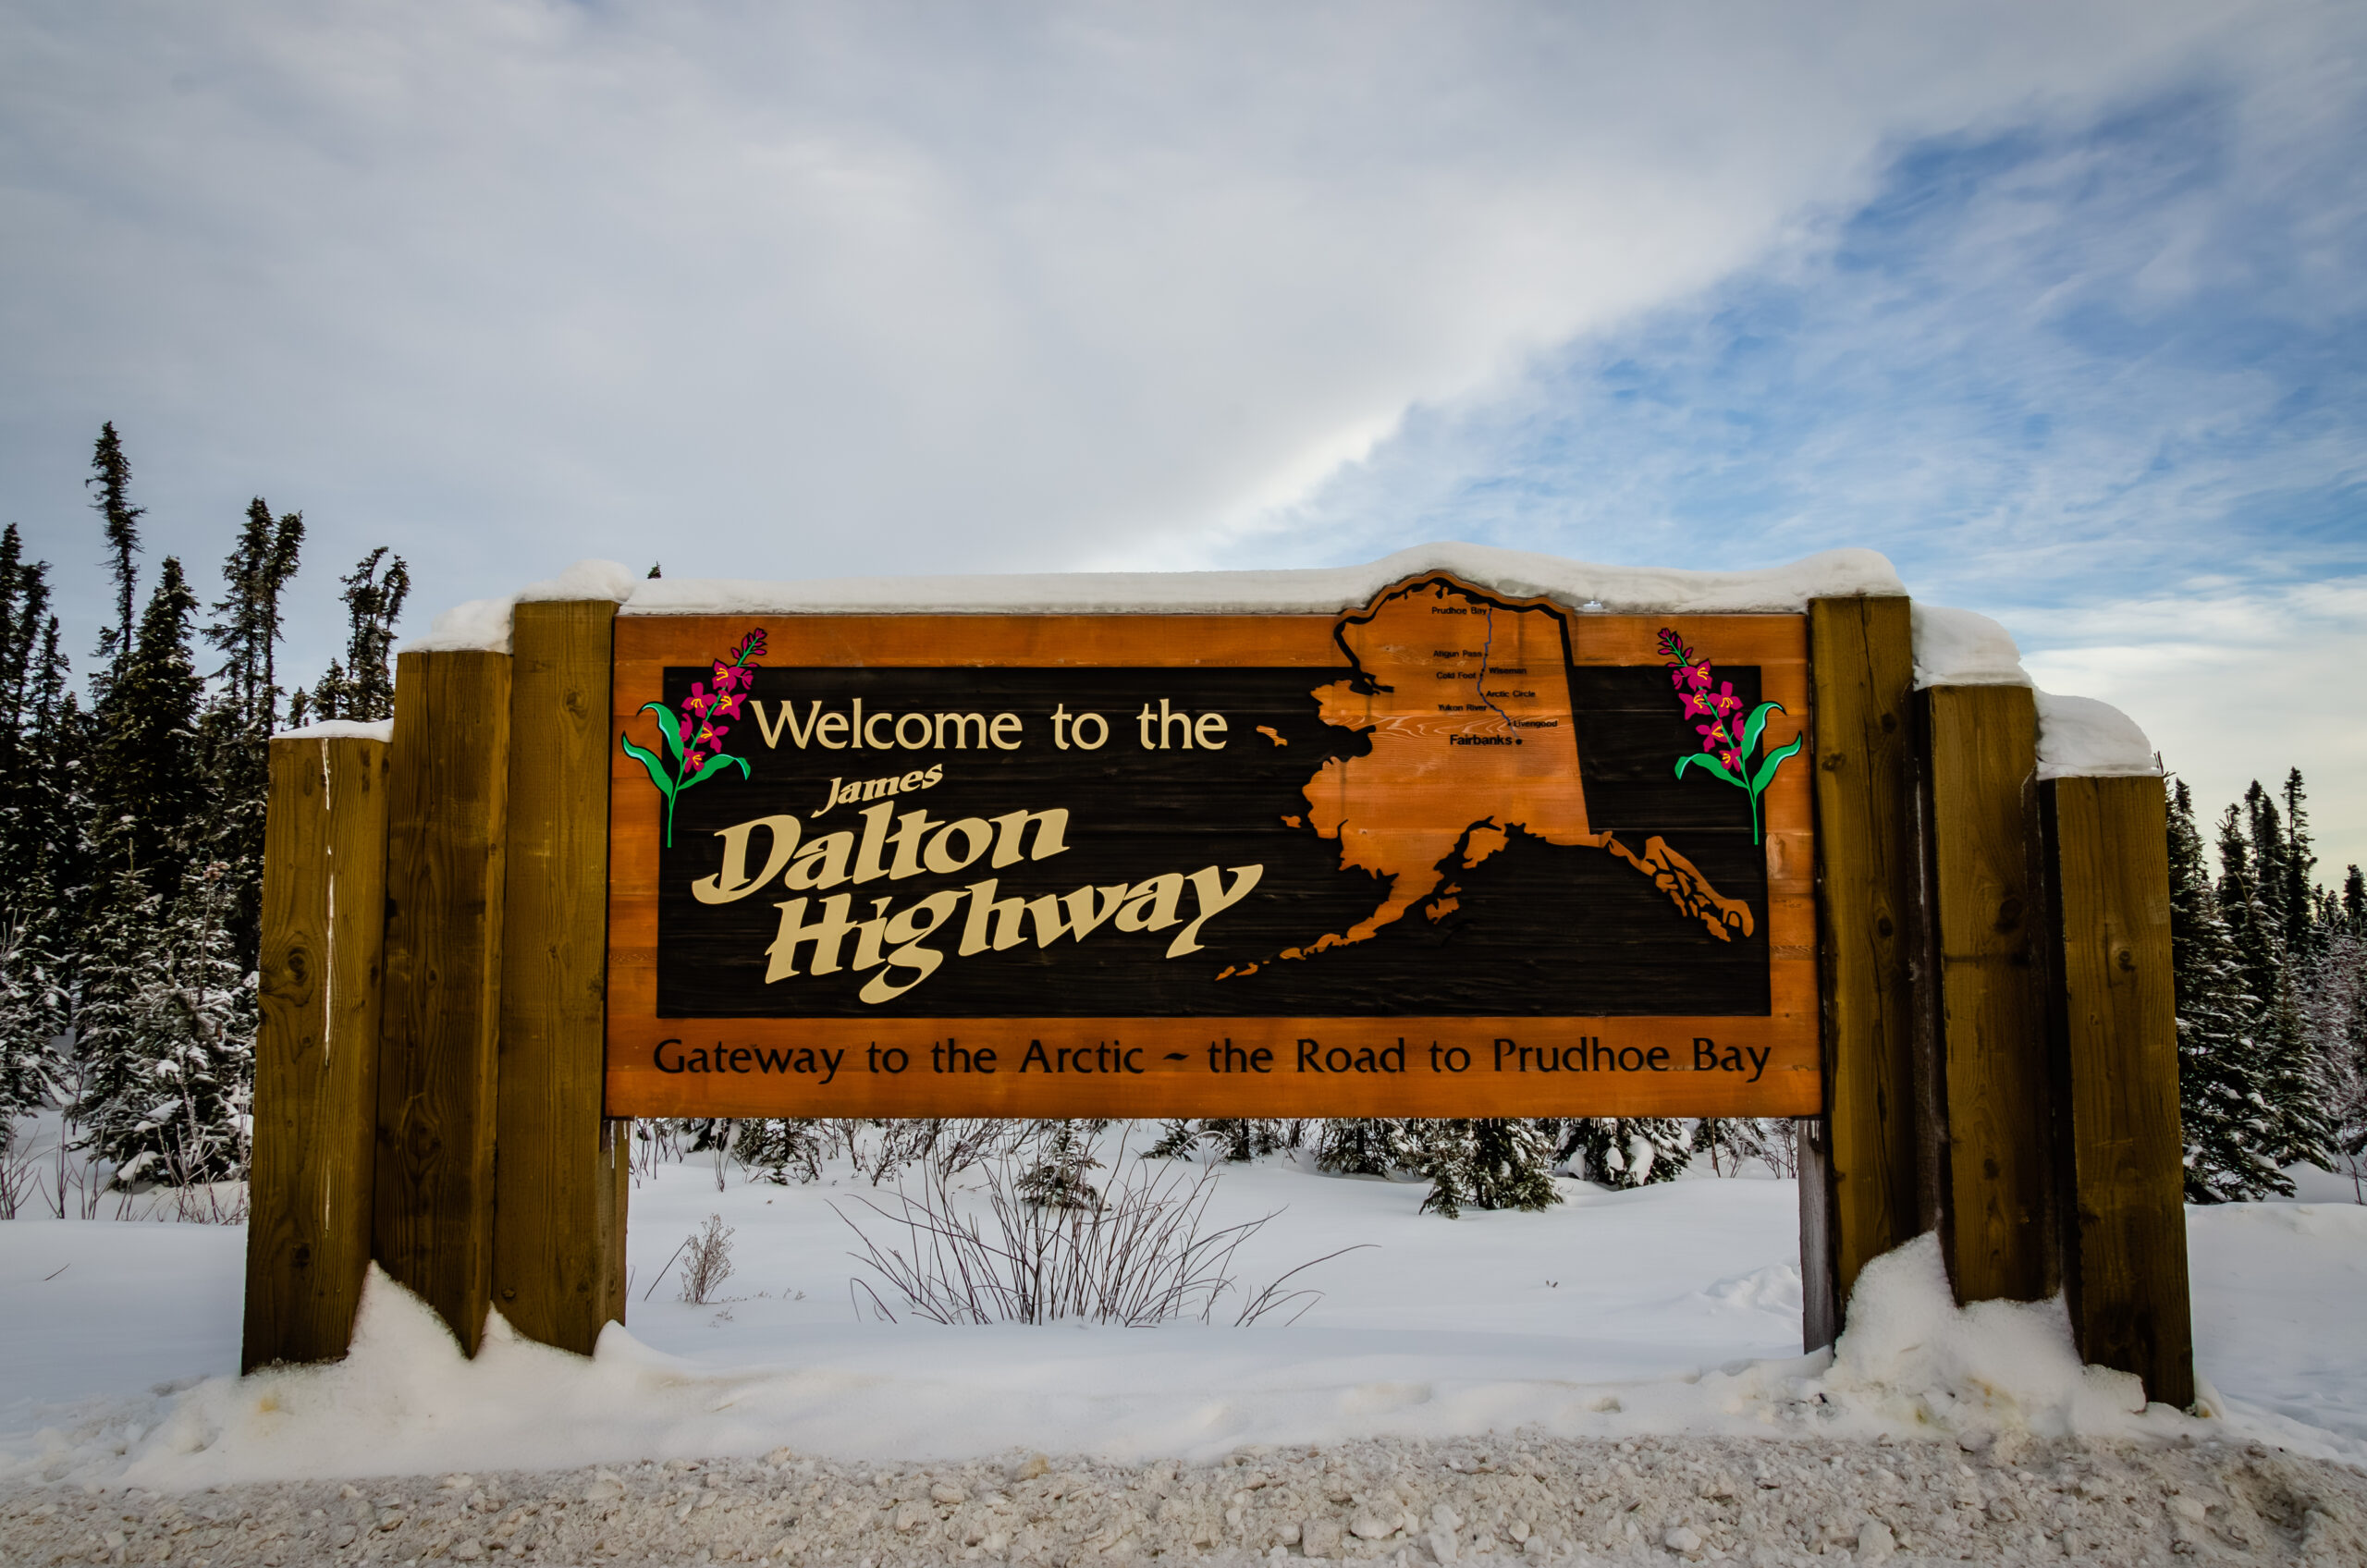 Dalton Highway in Alaska